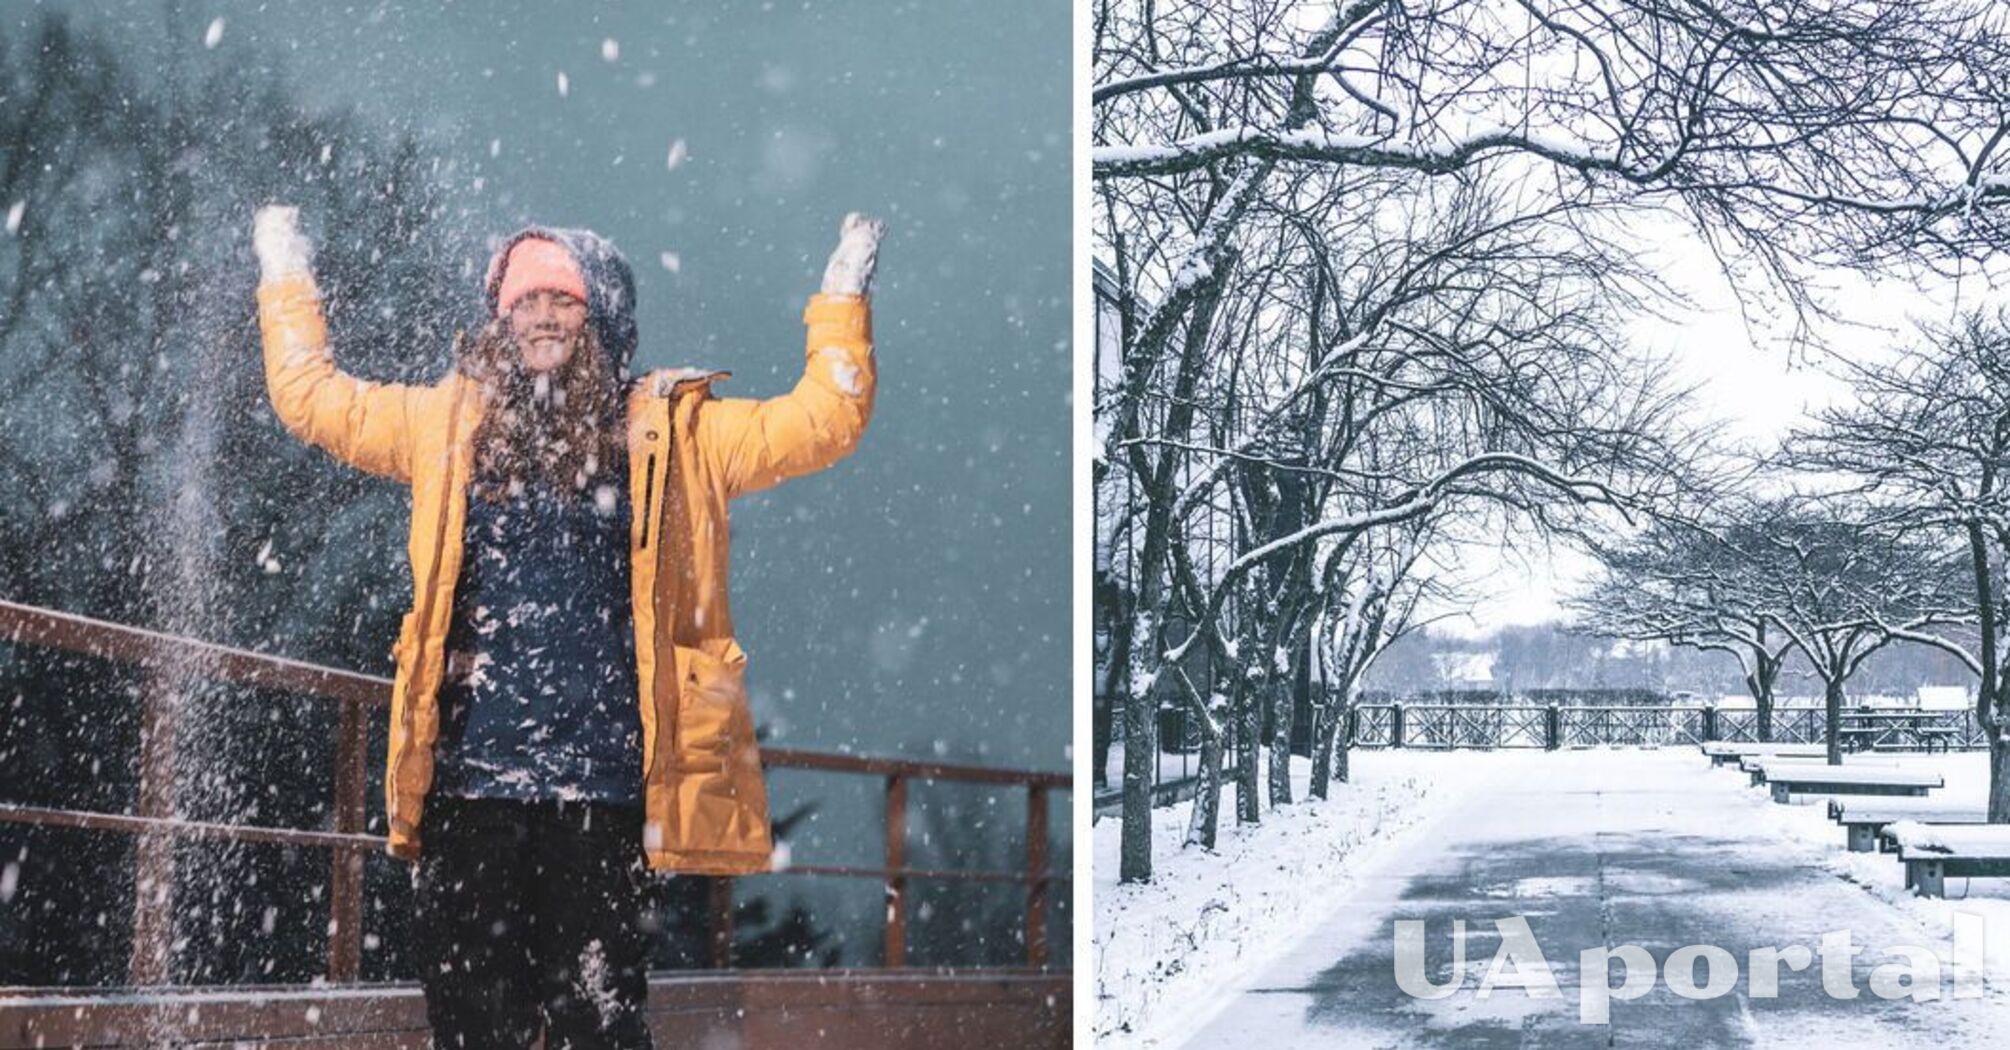 Погода в Украине - синоптик прогнозирует потепление, снегопады и ливни